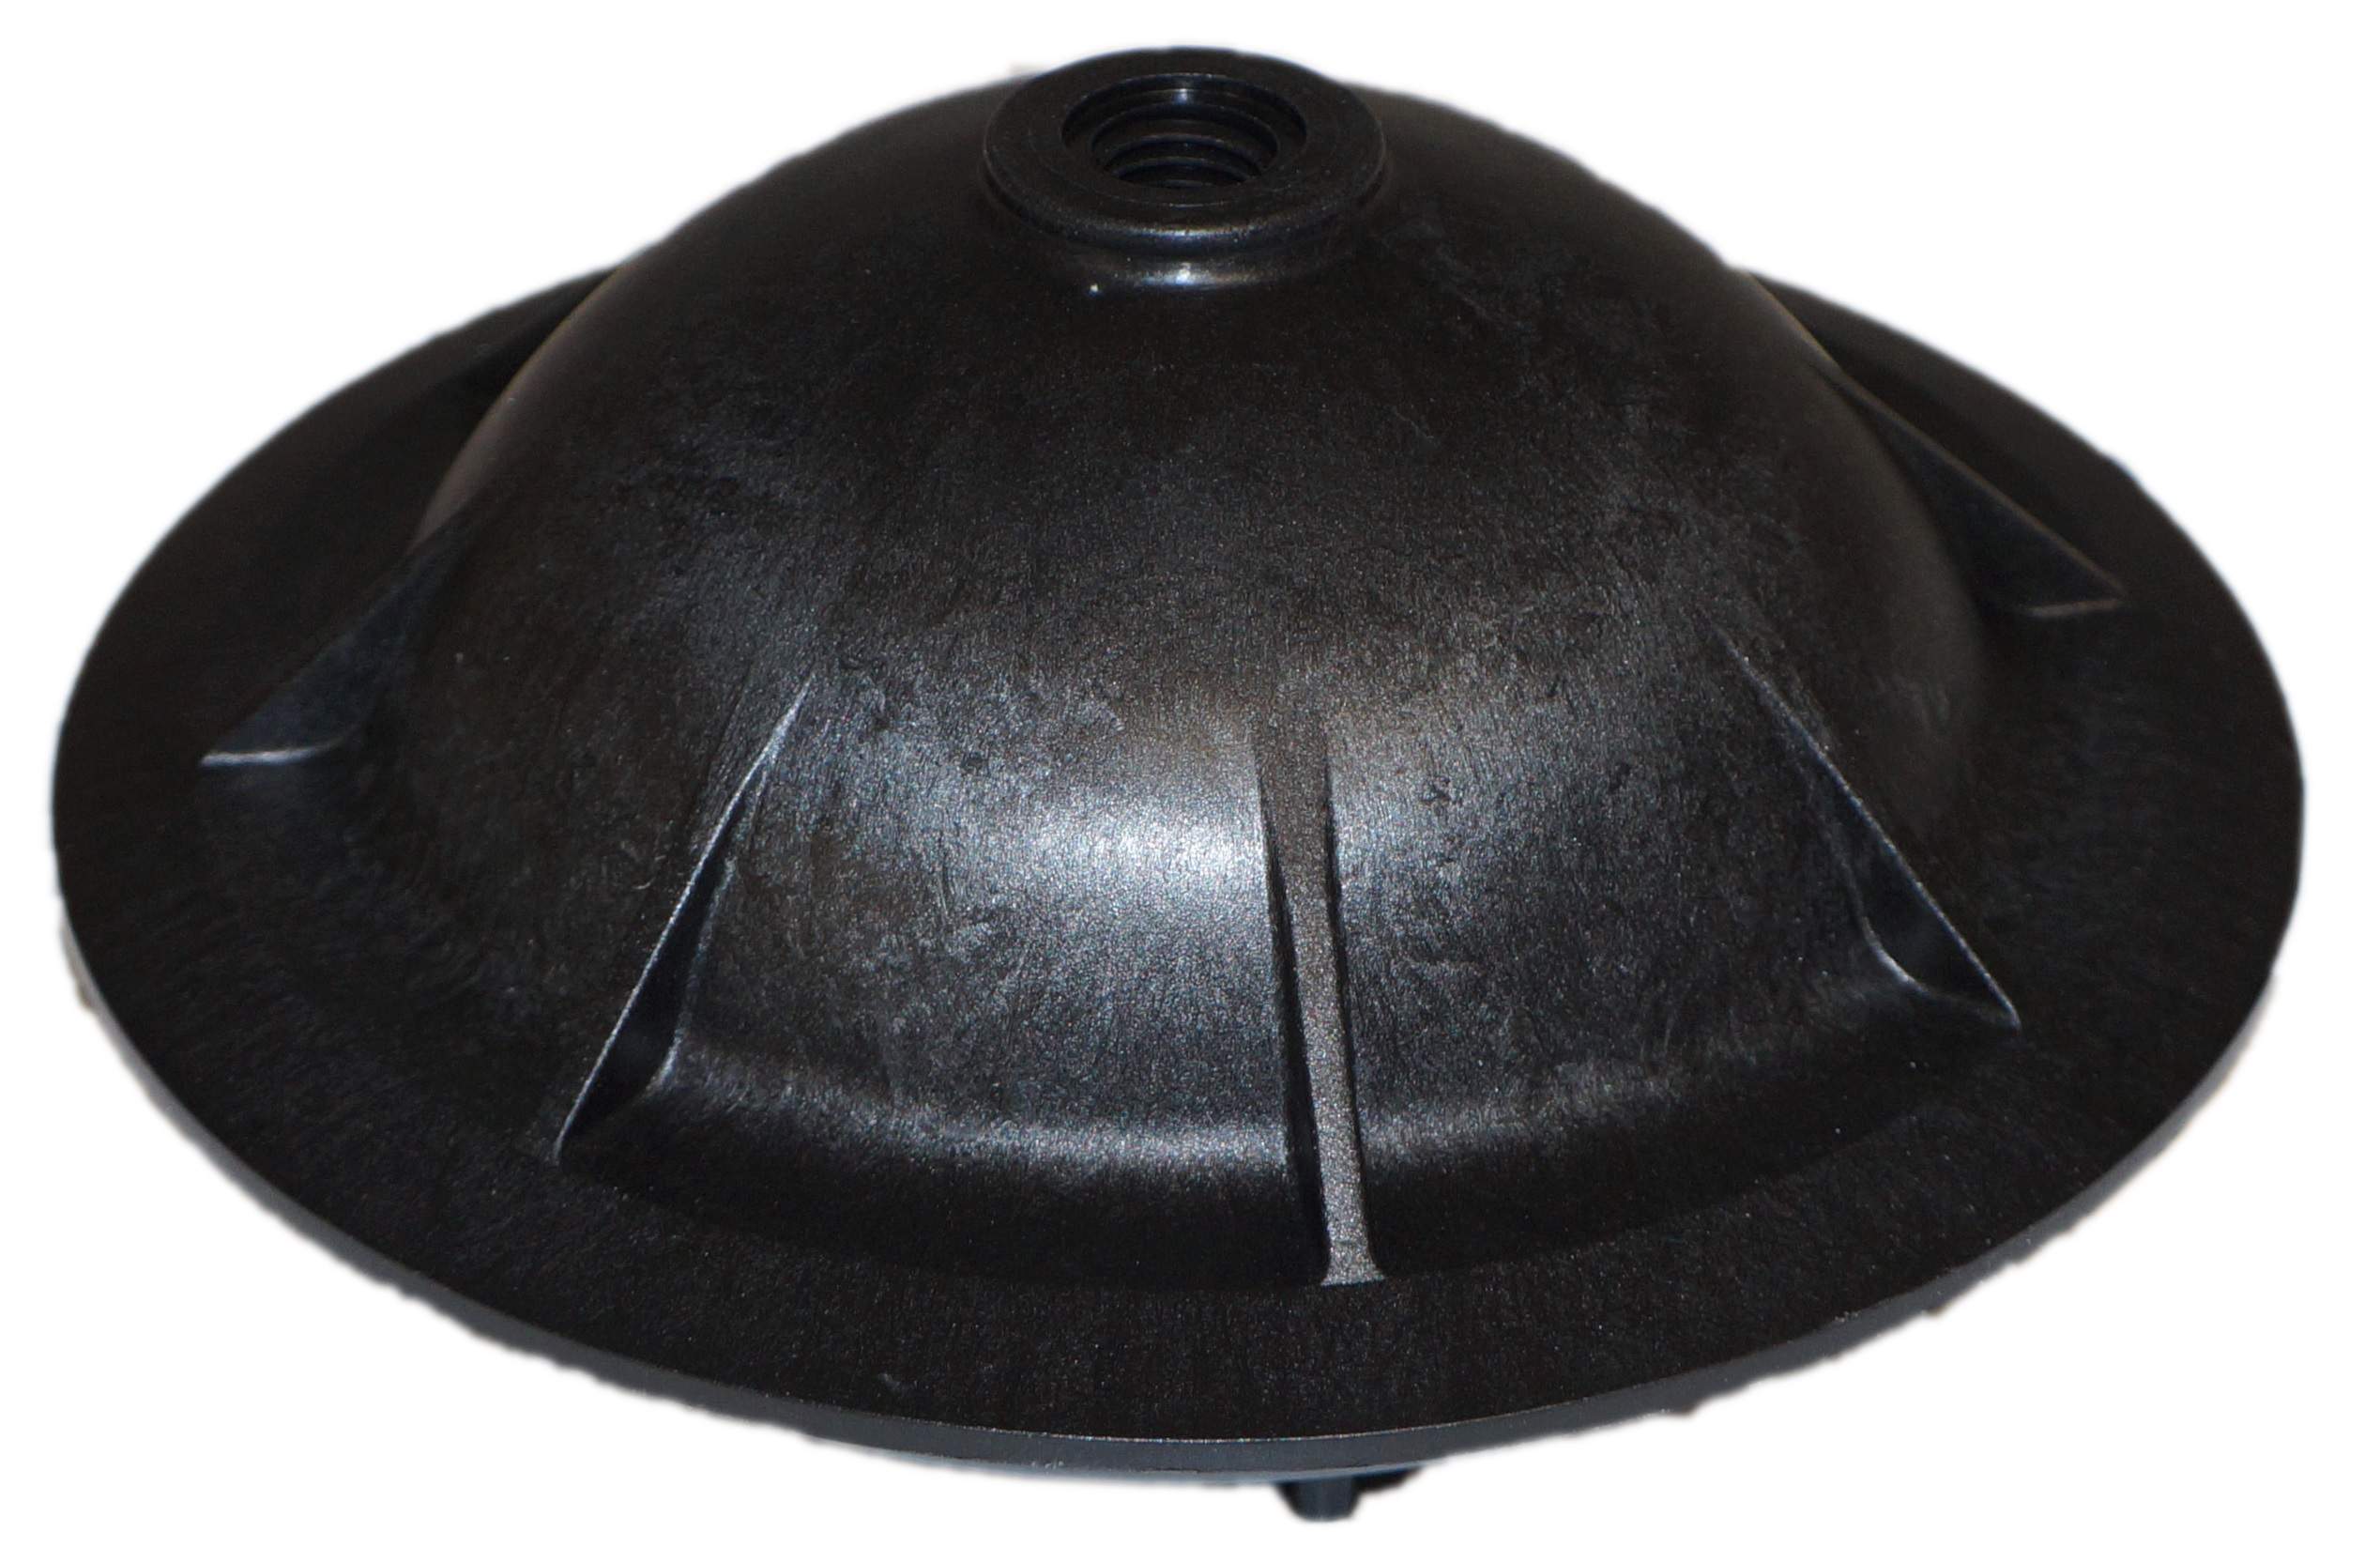 HAYWARD/ARDECHE Filter Dome 205mm diameter - SX0244K